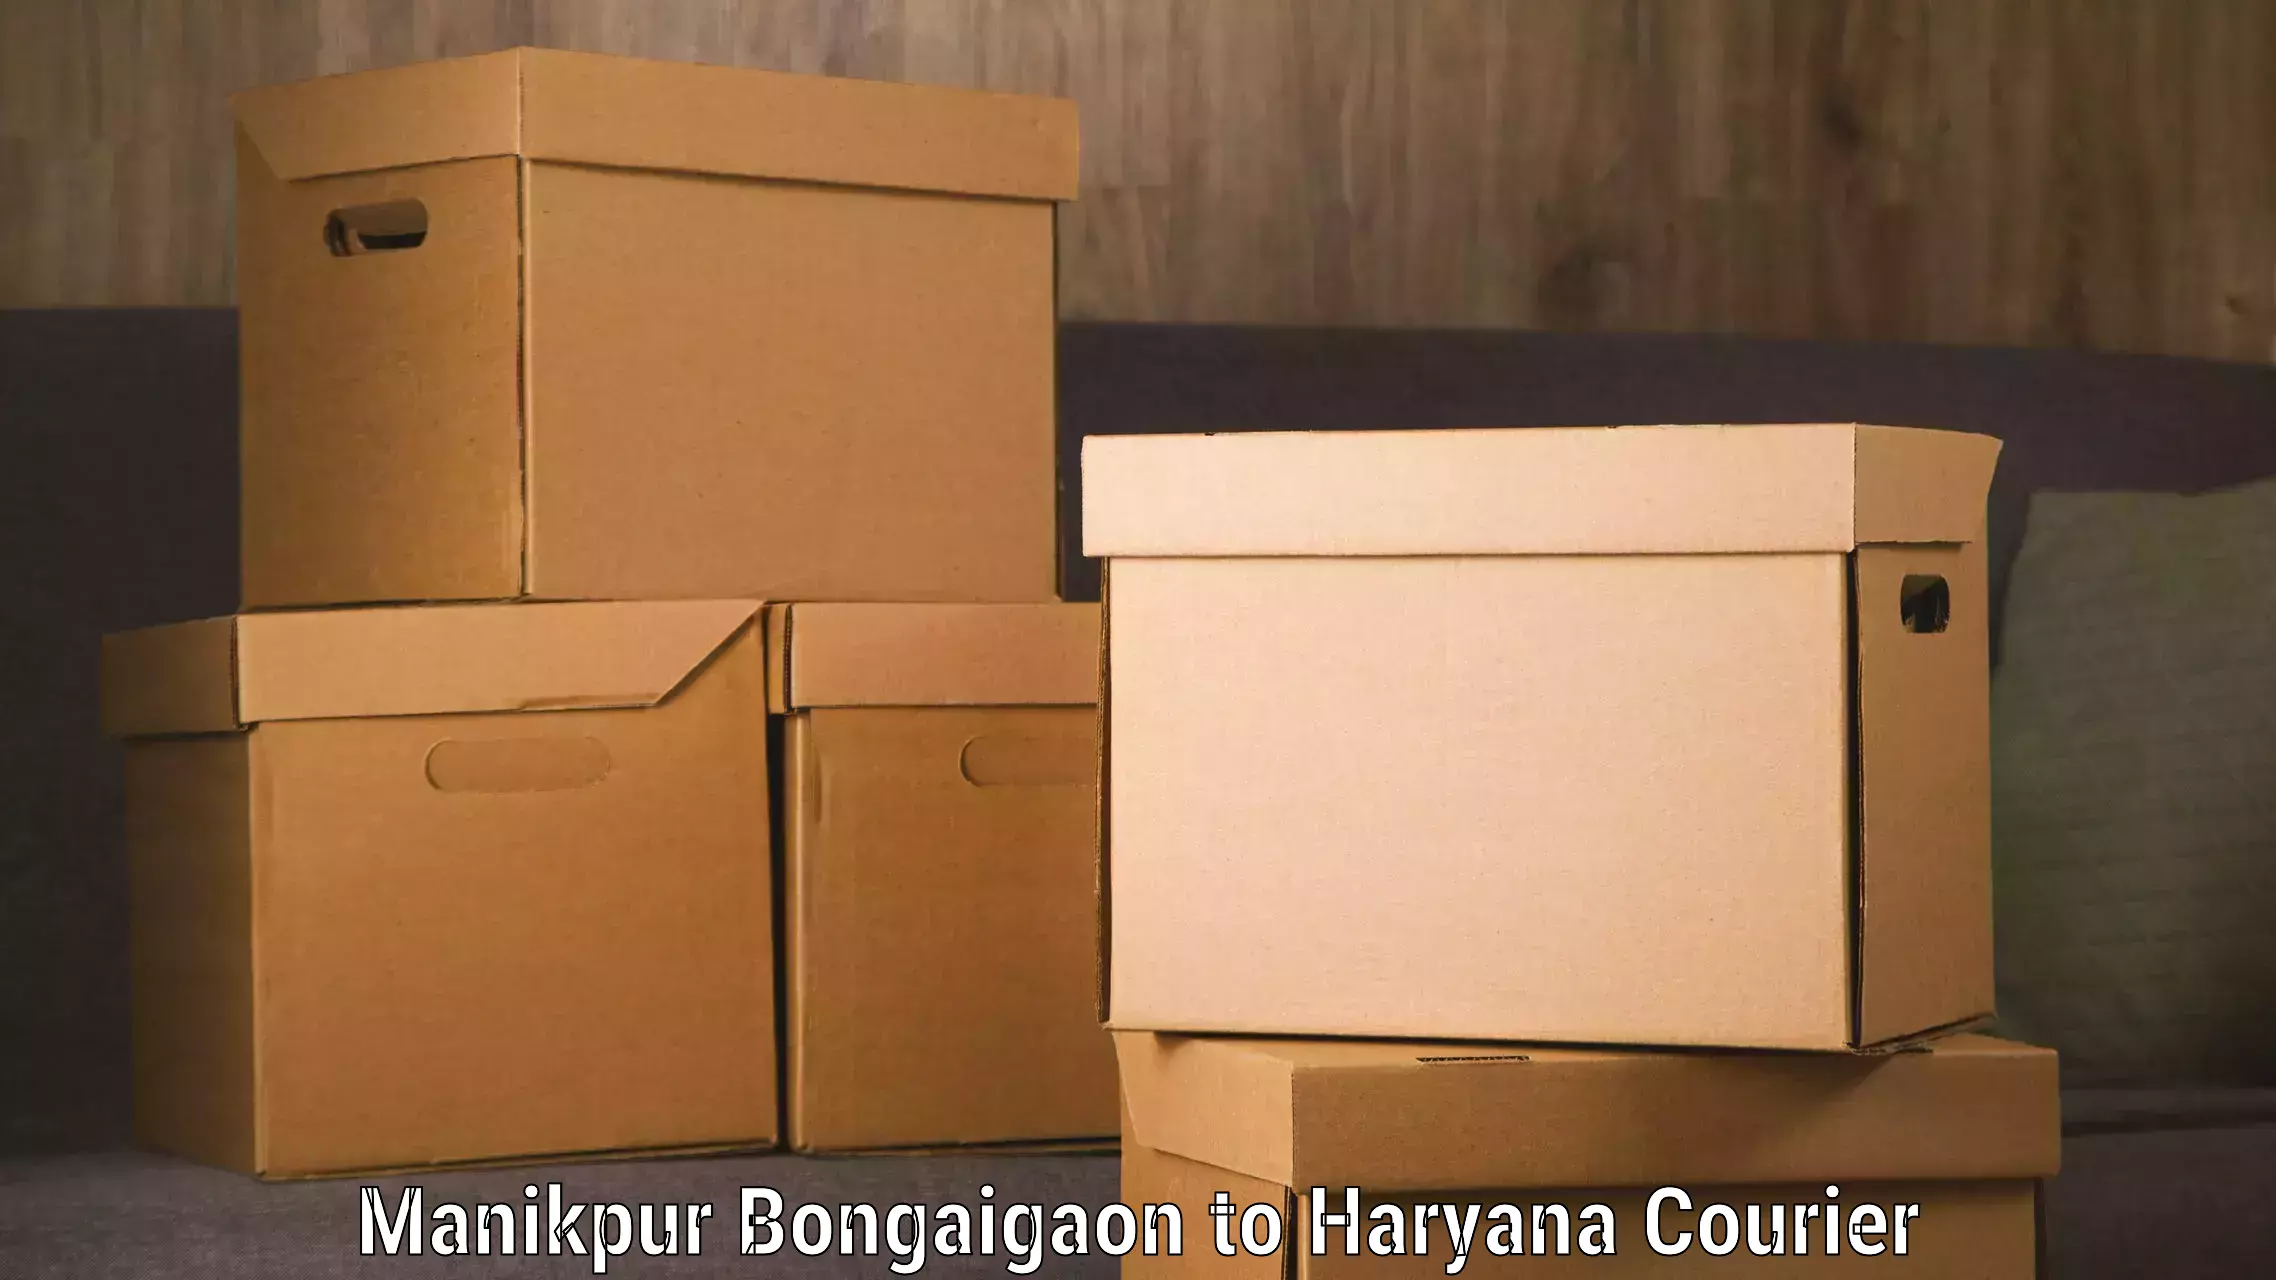 Baggage transport scheduler Manikpur Bongaigaon to Narwana